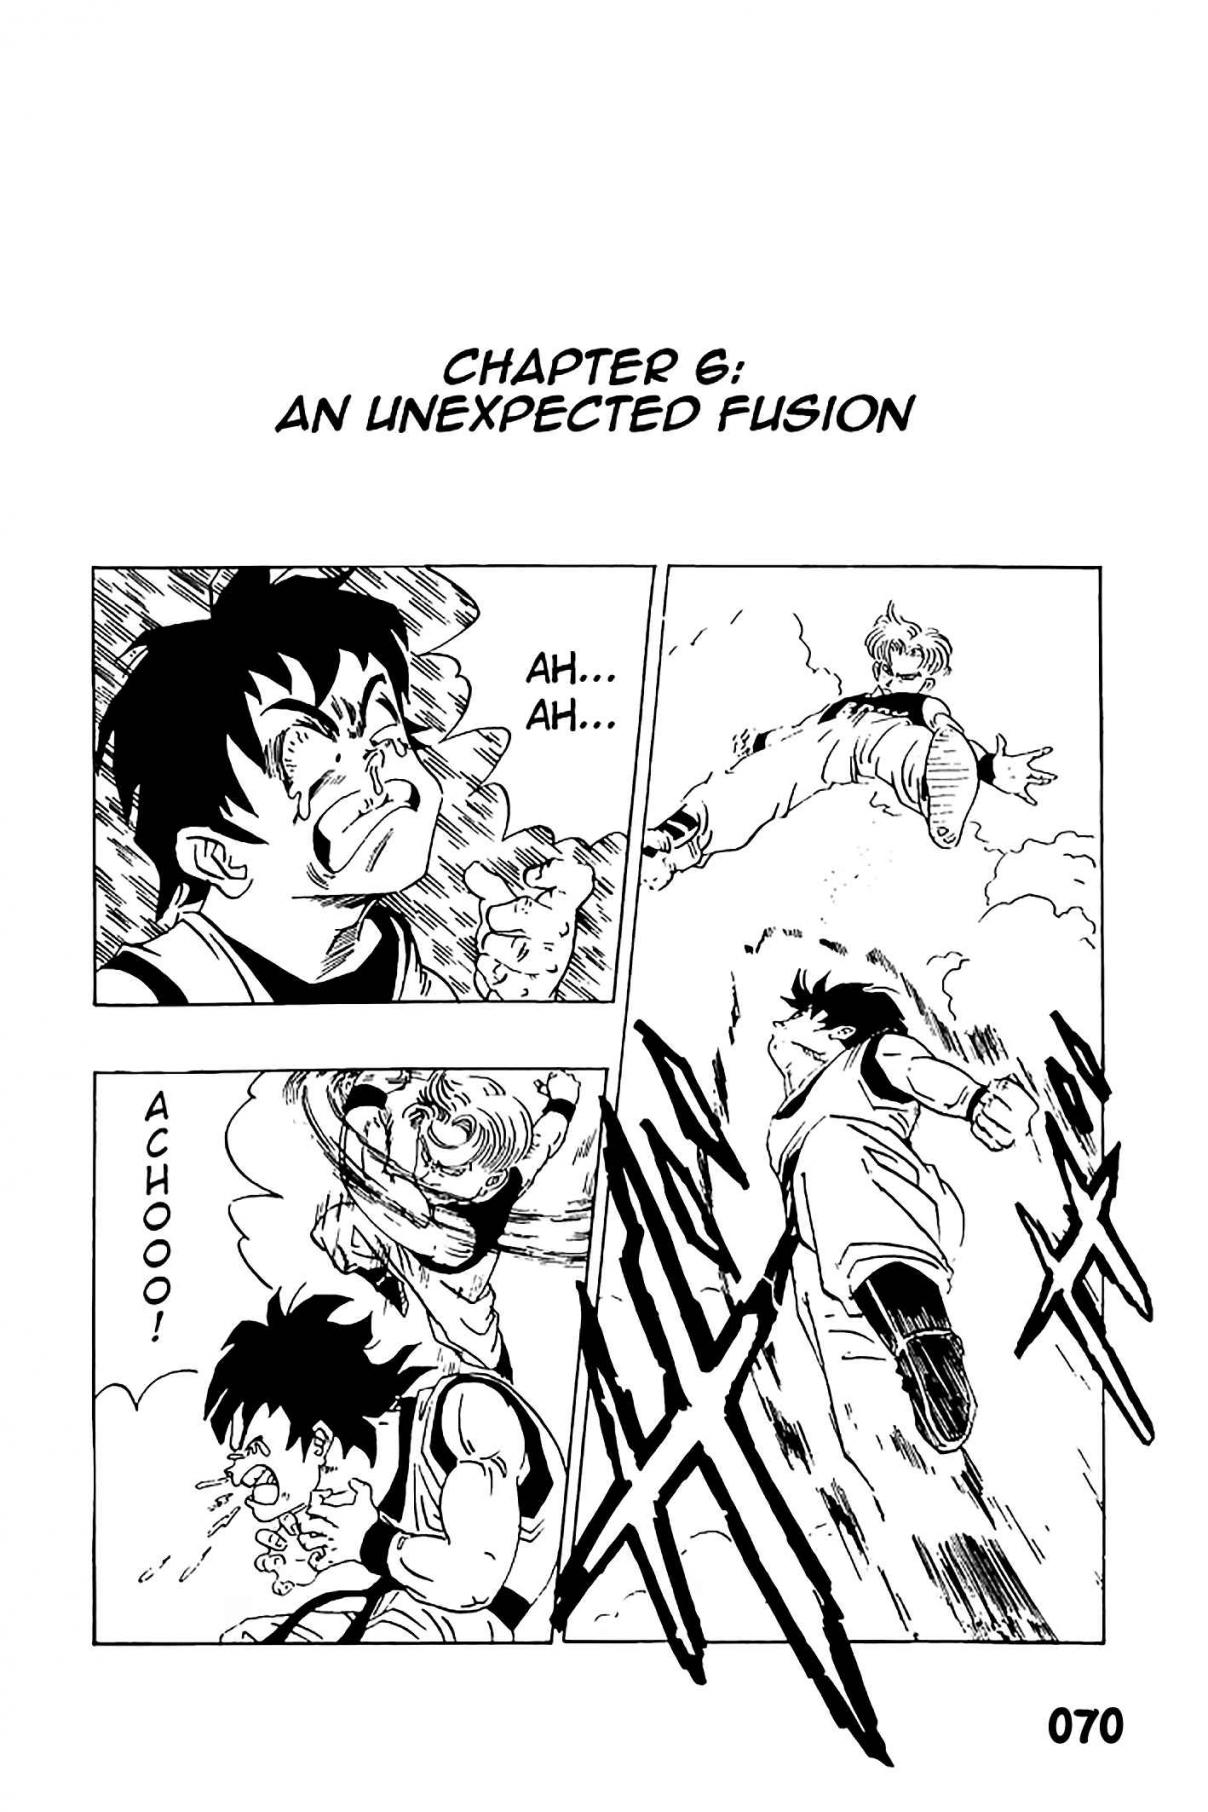 Dragon Ball Zeroverse (Doujinshi) Vol. 1 Ch. 6 An Unexpected Fusion